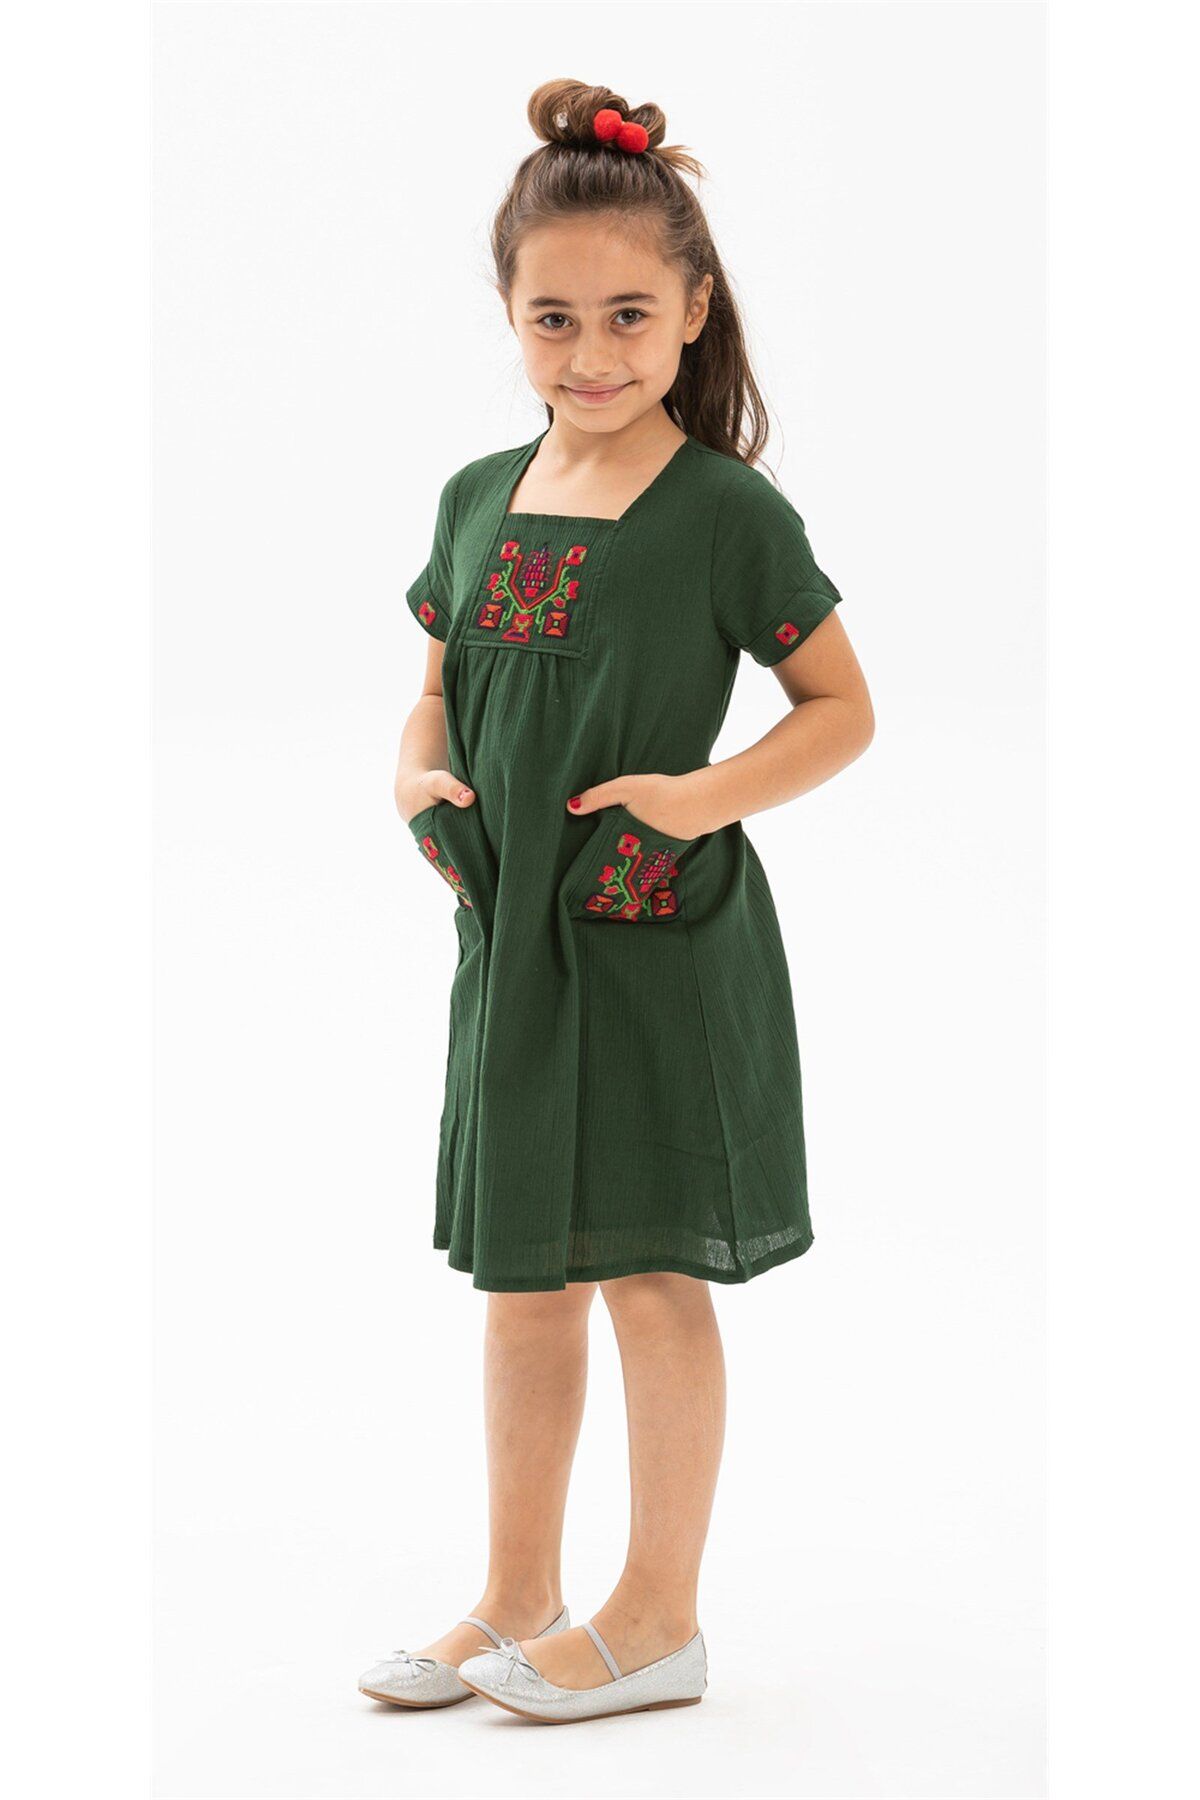 Eliş Şile Bezi Melek Şile Bezi Çocuk Yazlık Elbise Yeşil Ysl